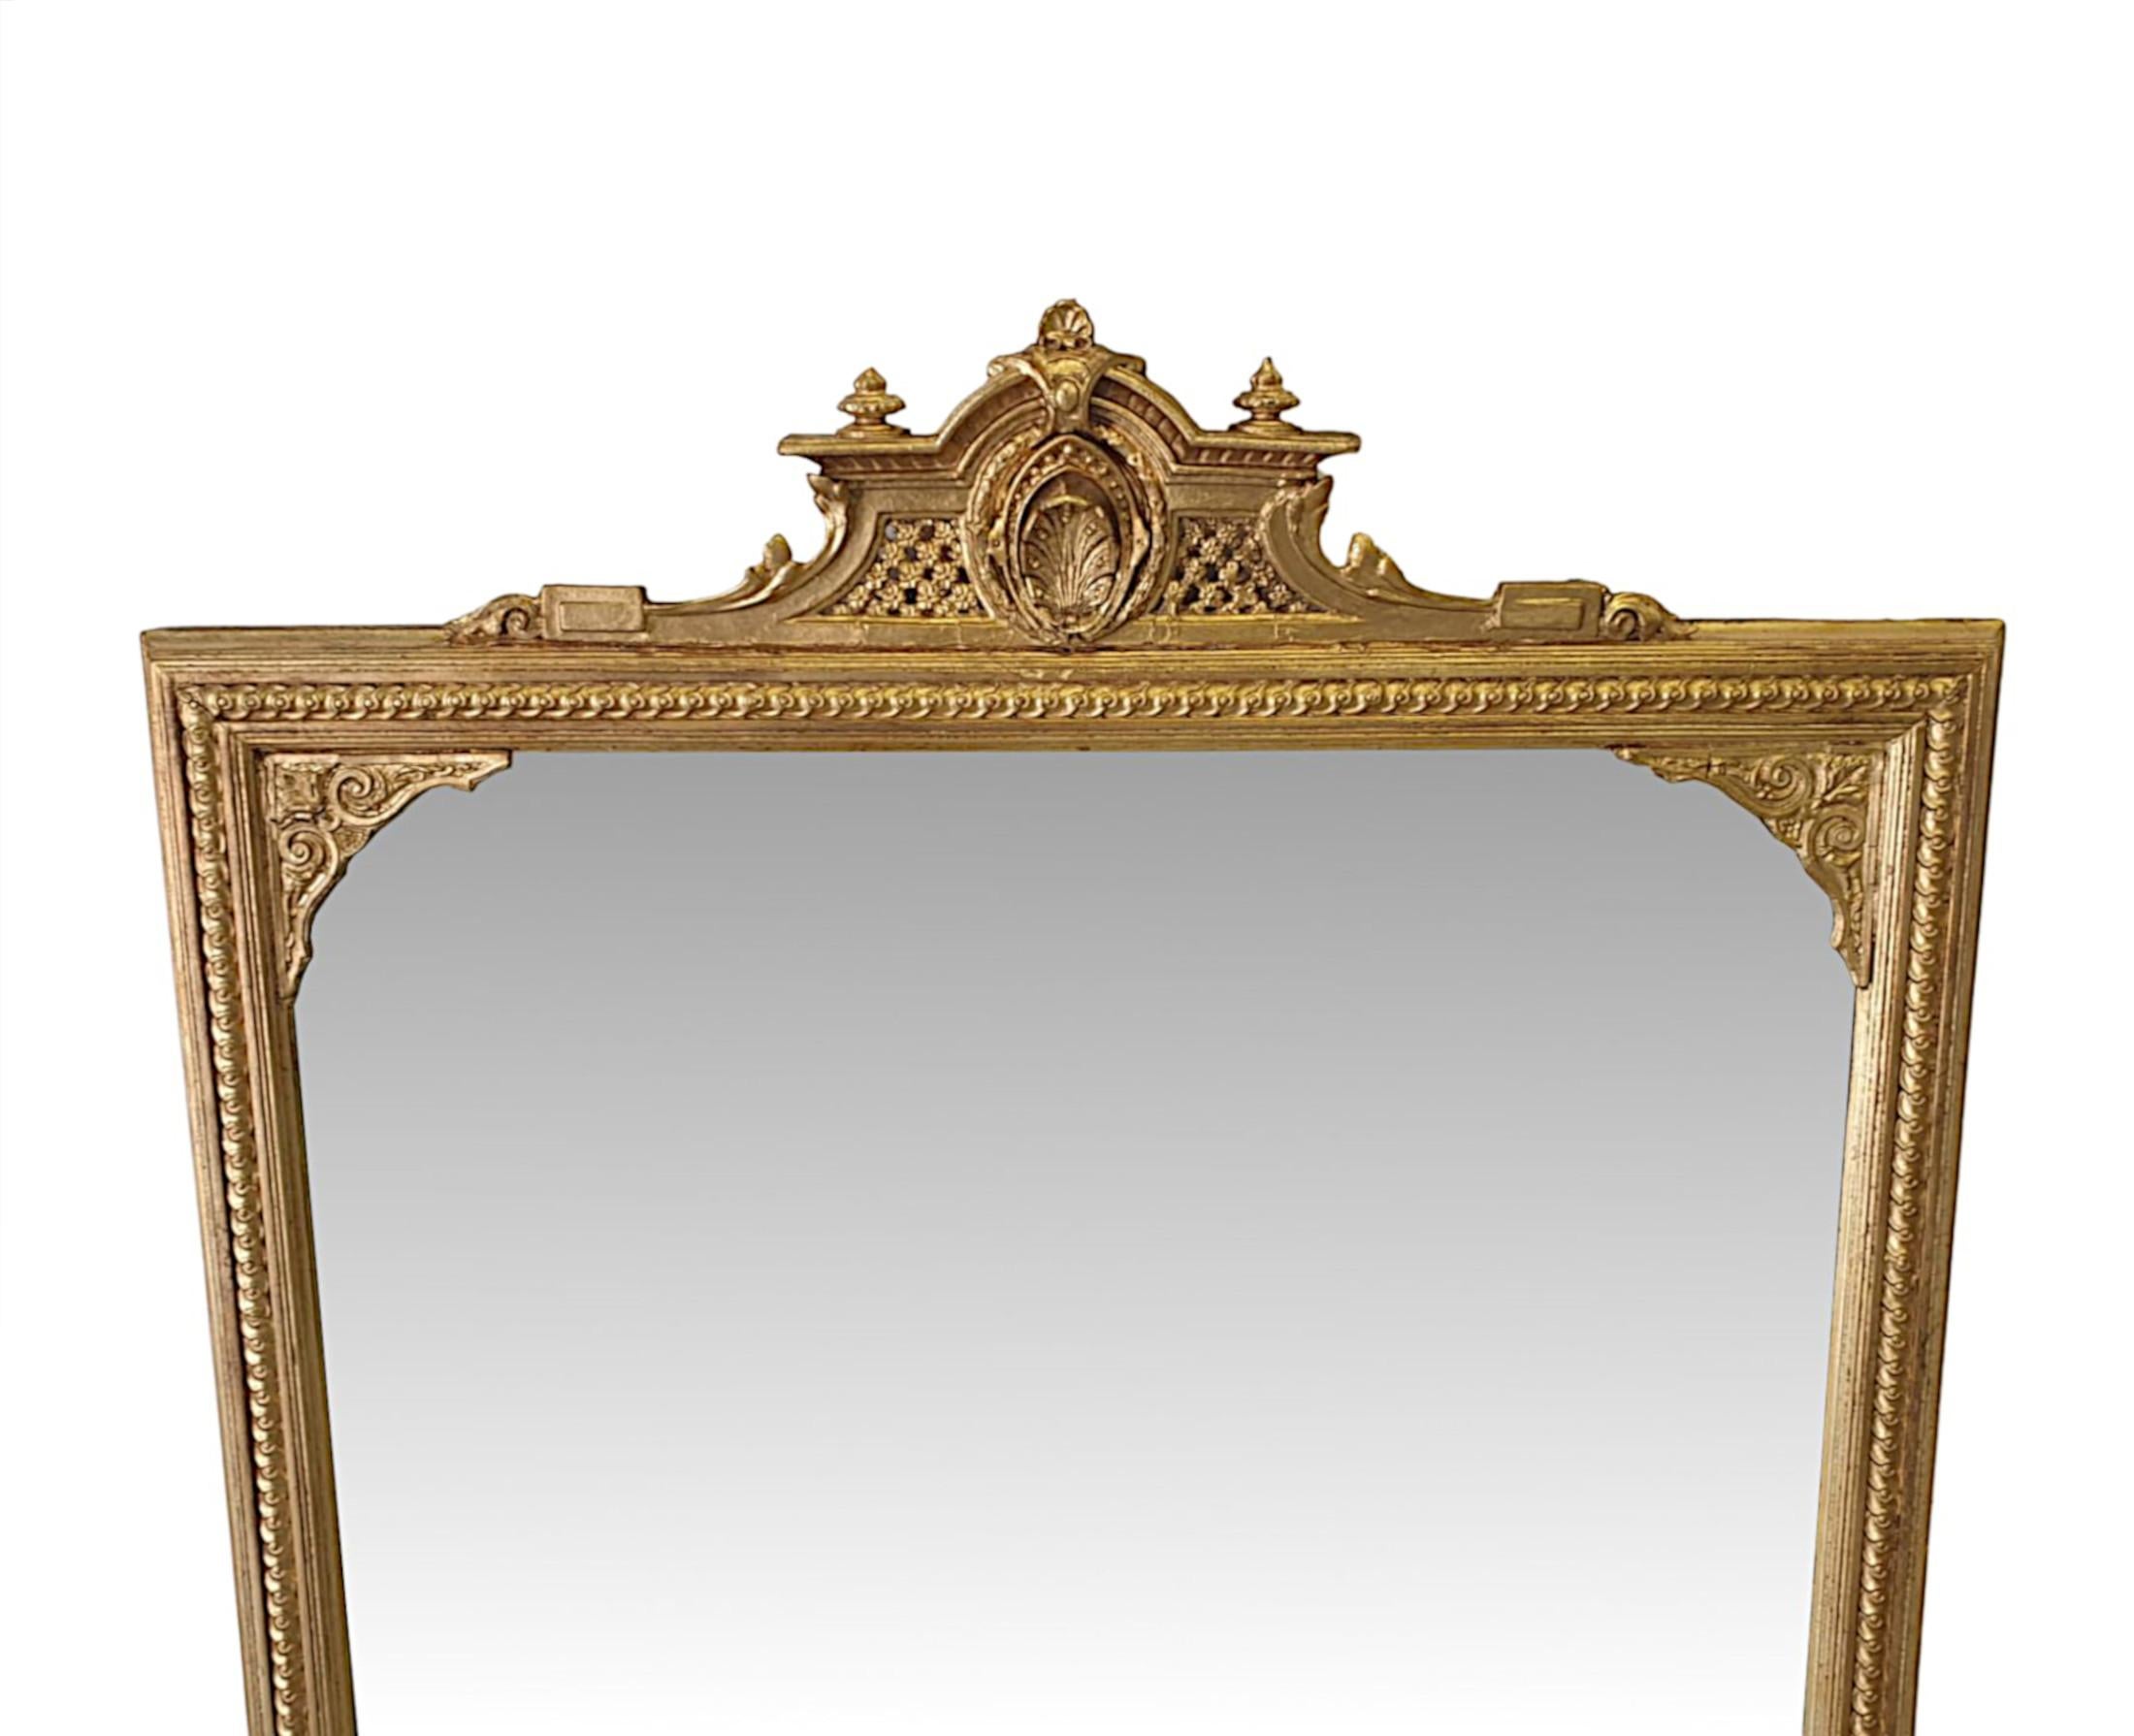 Miroir de cheminée en bois doré du XIXe siècle. La plaque de verre du miroir est enchâssée dans un superbe cadre de forme rectangulaire en bois doré, mouluré et cannelé, sculpté à la main, avec une bordure en forme d'œuf et de fléchette et des